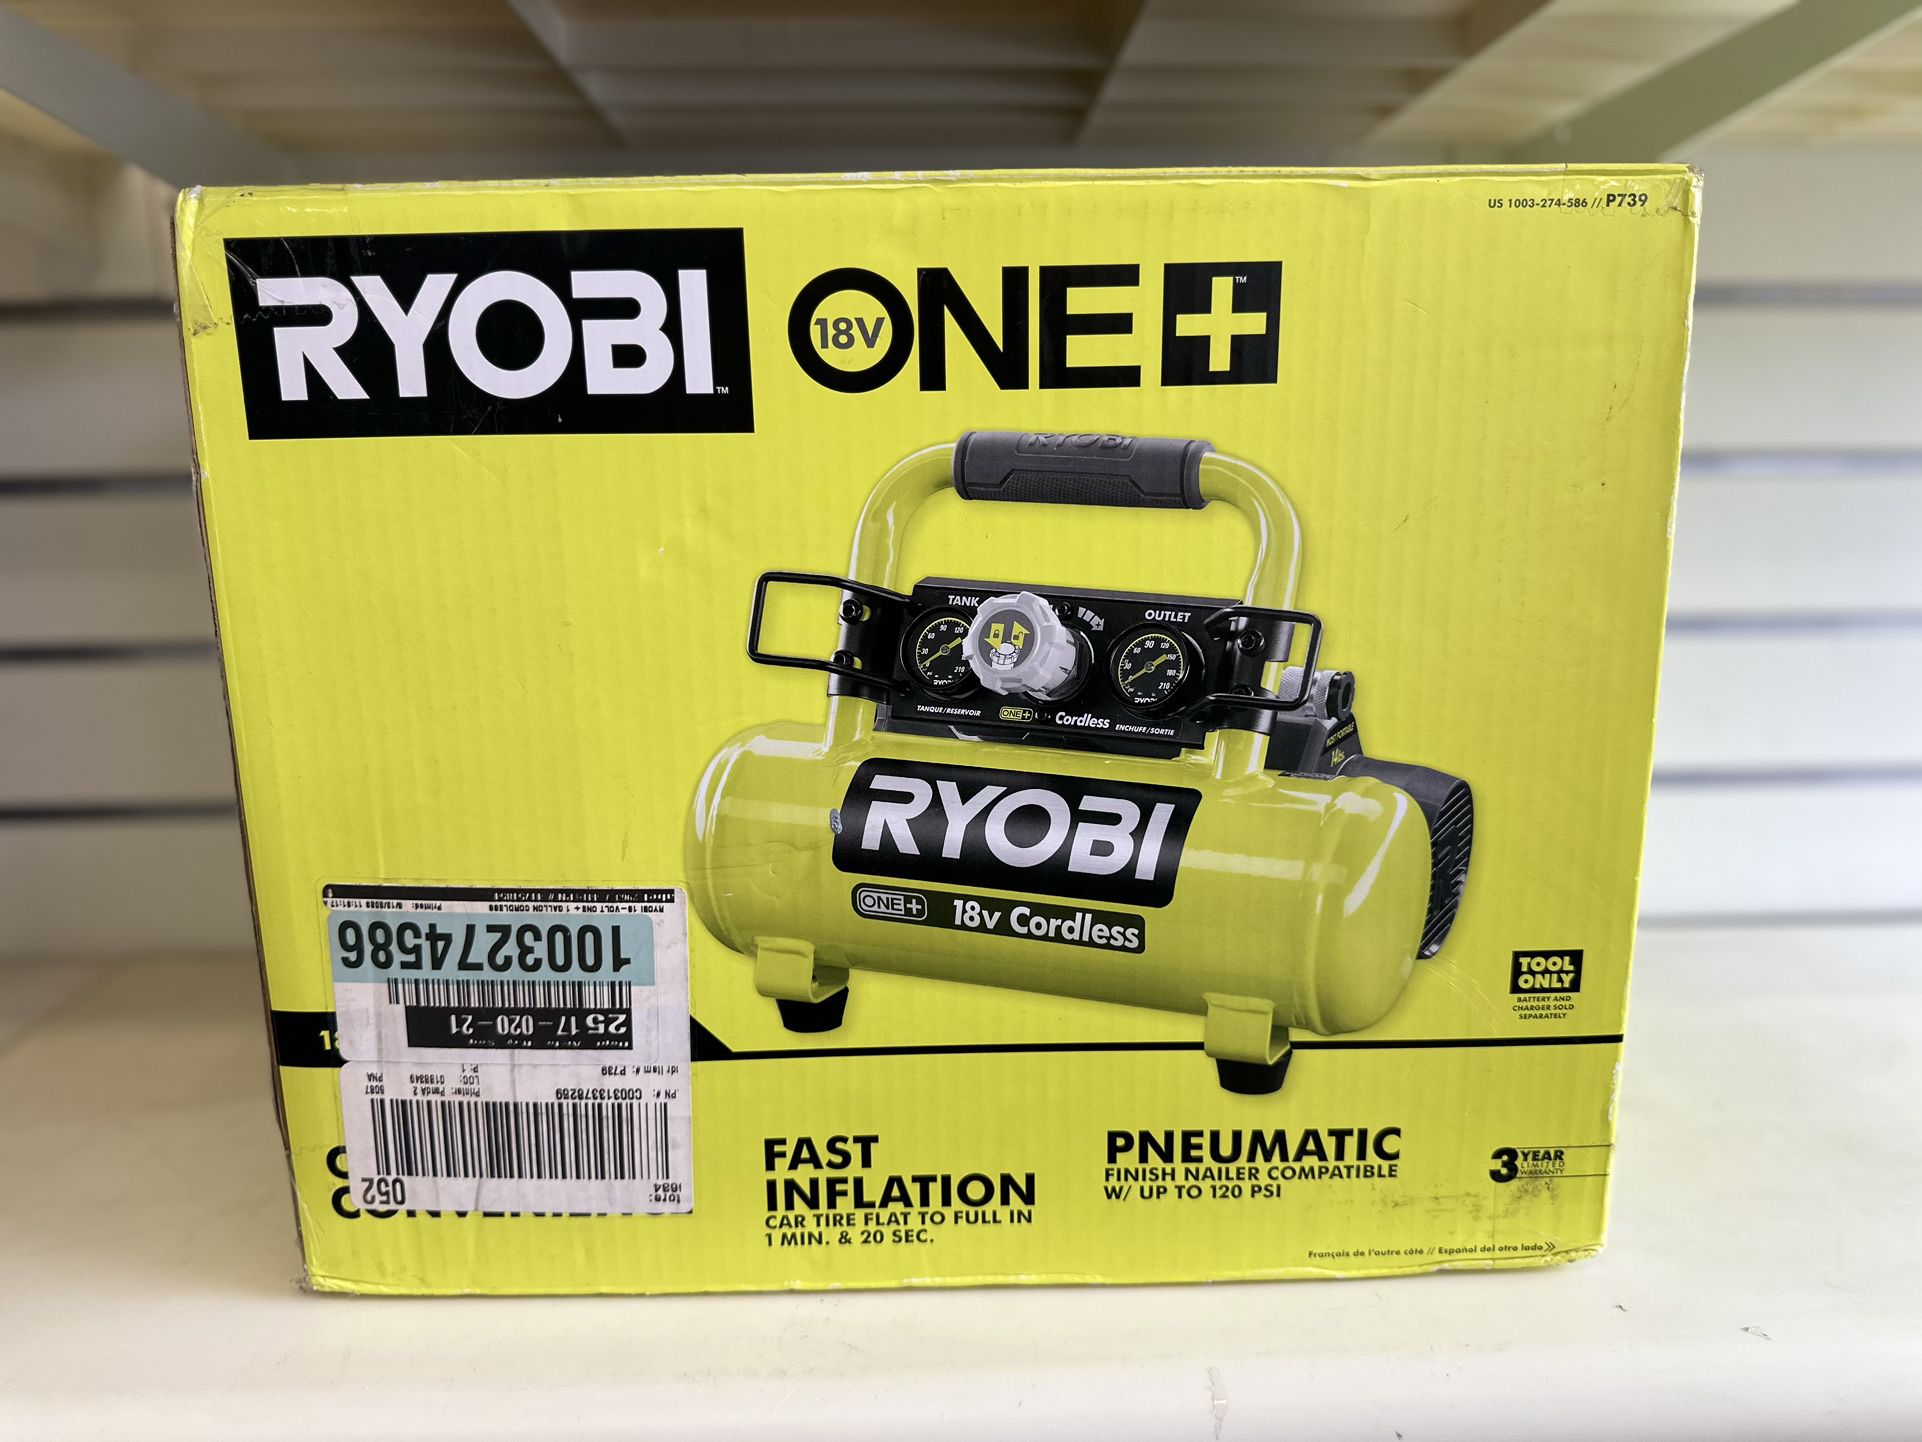 Ryobi 18V 1-Gallon Compressor (Tool Only)